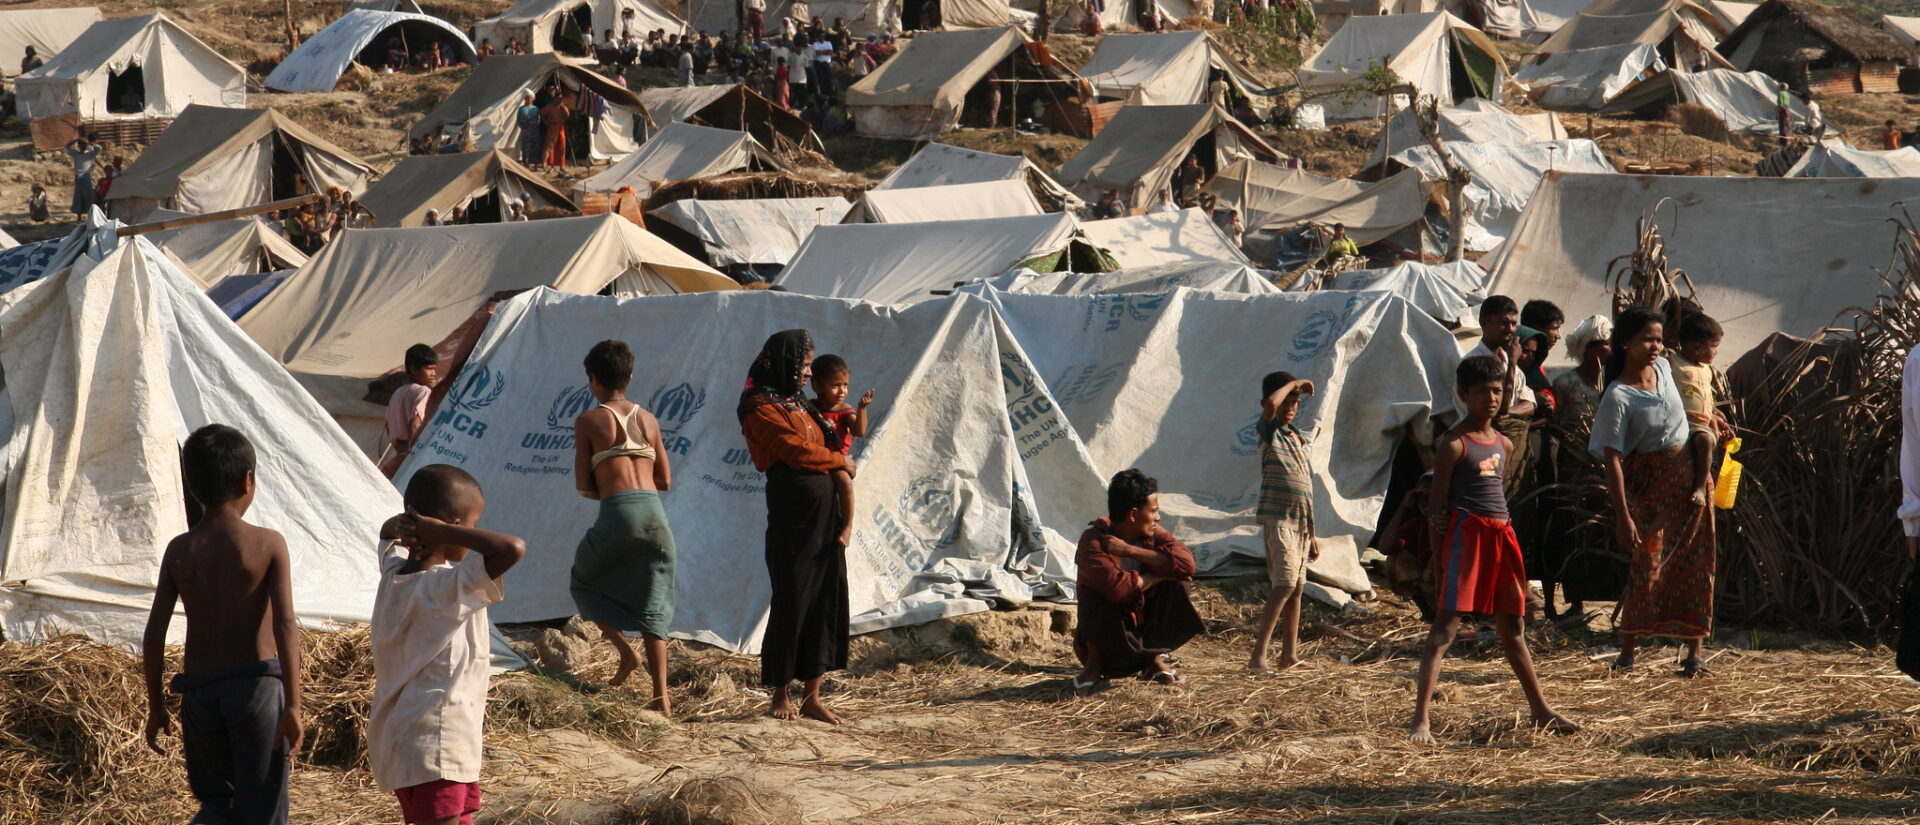 Plus de 45'000 personnes ont été déplacées dans l'Etat de Kayah (Birmanie) depuis février 2021 | Photo d'illustration © DFID/Flickr/CC BY-SA 2.0